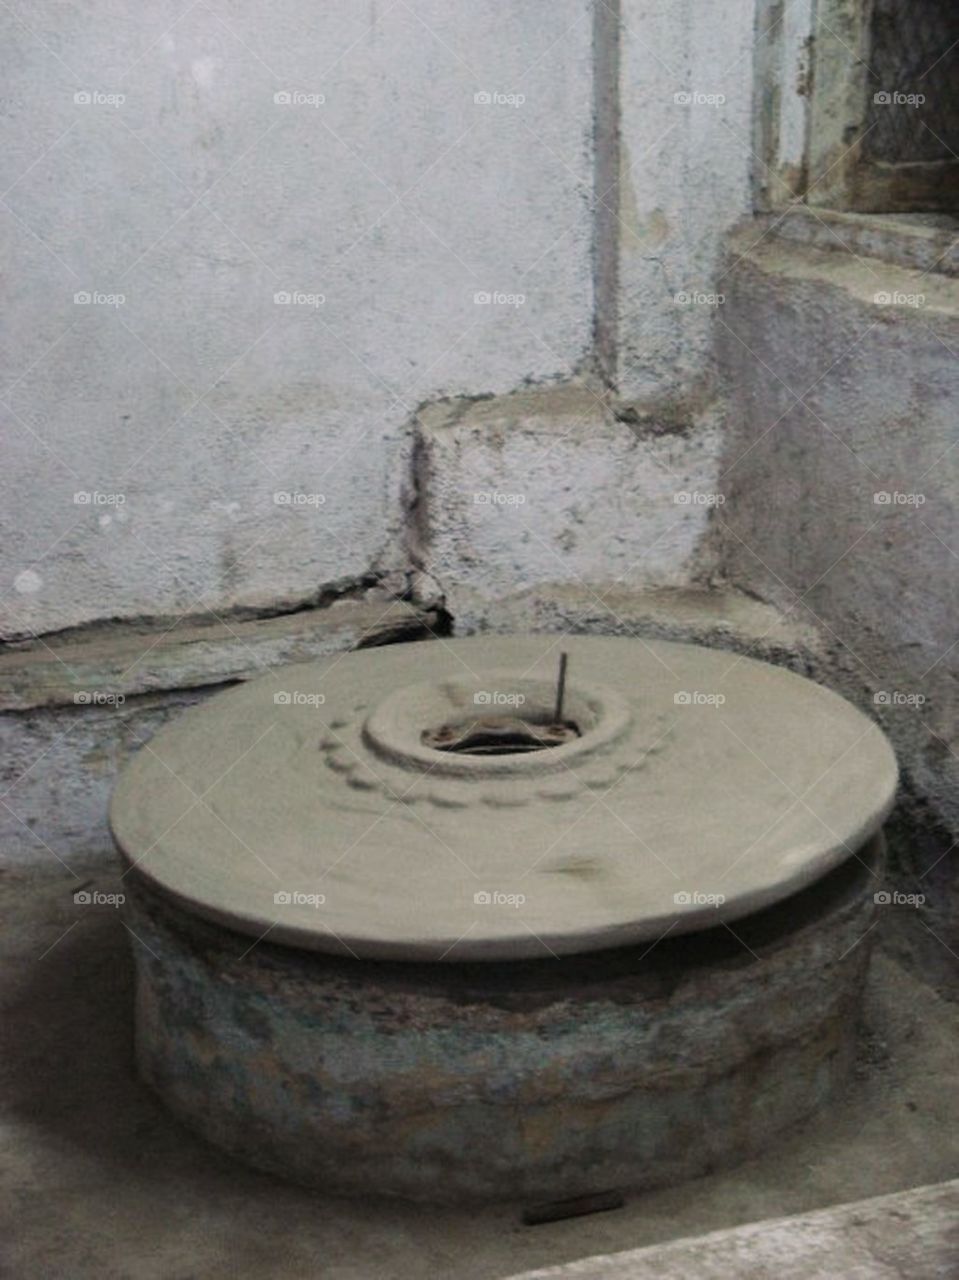 Pottery wheel outside home